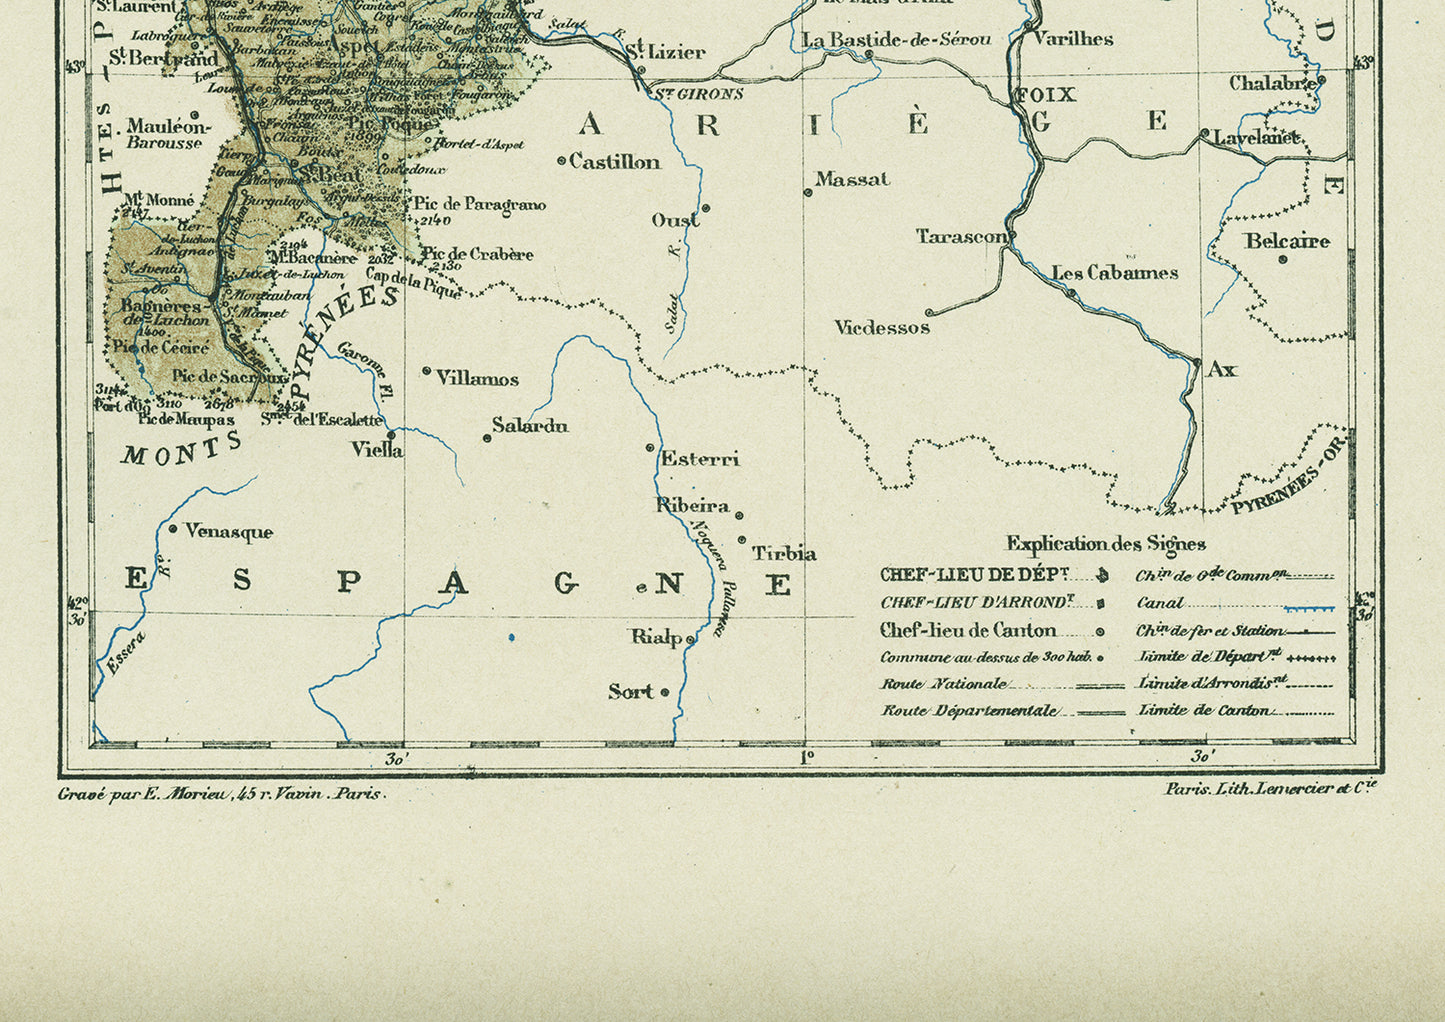 1892 Antique map of Haute Garonne - Toulouse